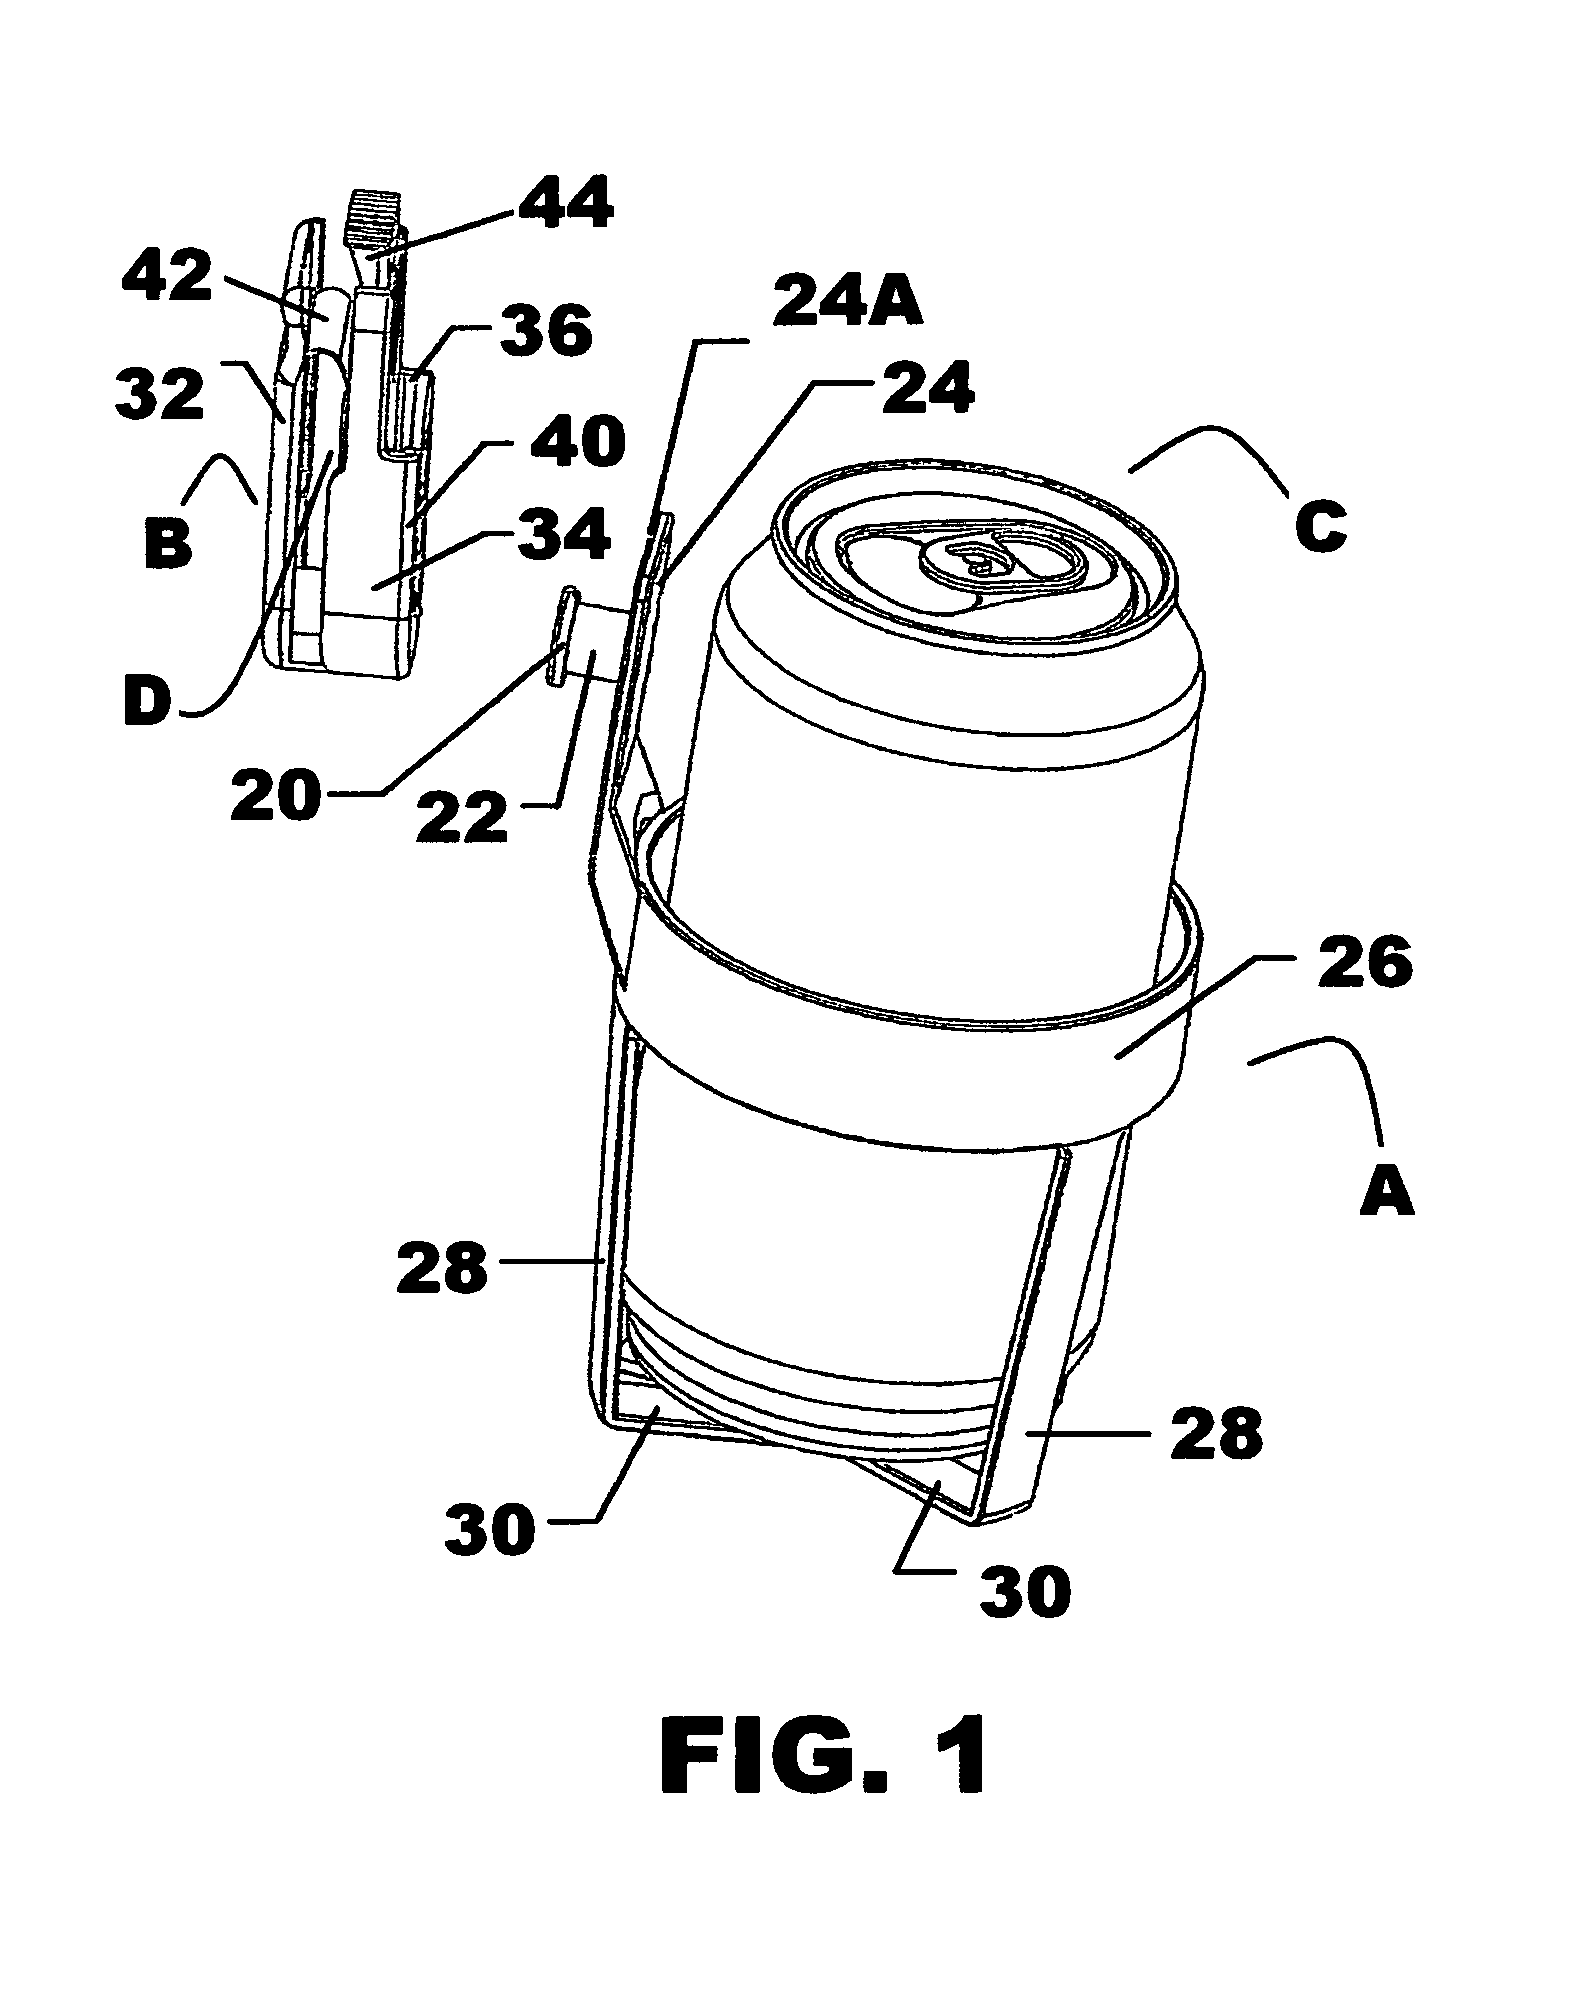 Beverage holder device